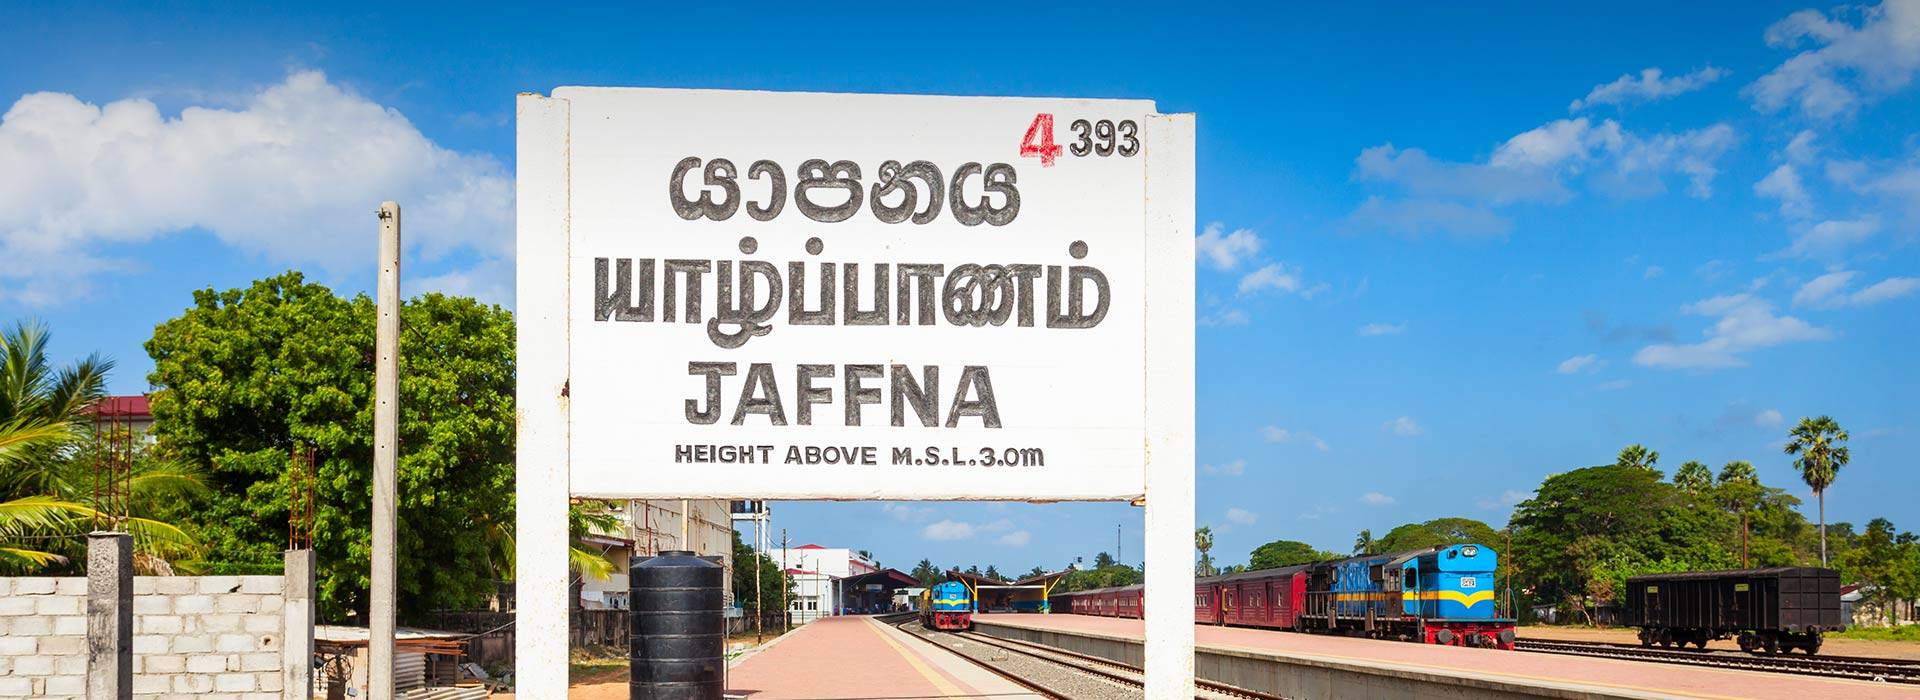 La penisola locale di Jaffna